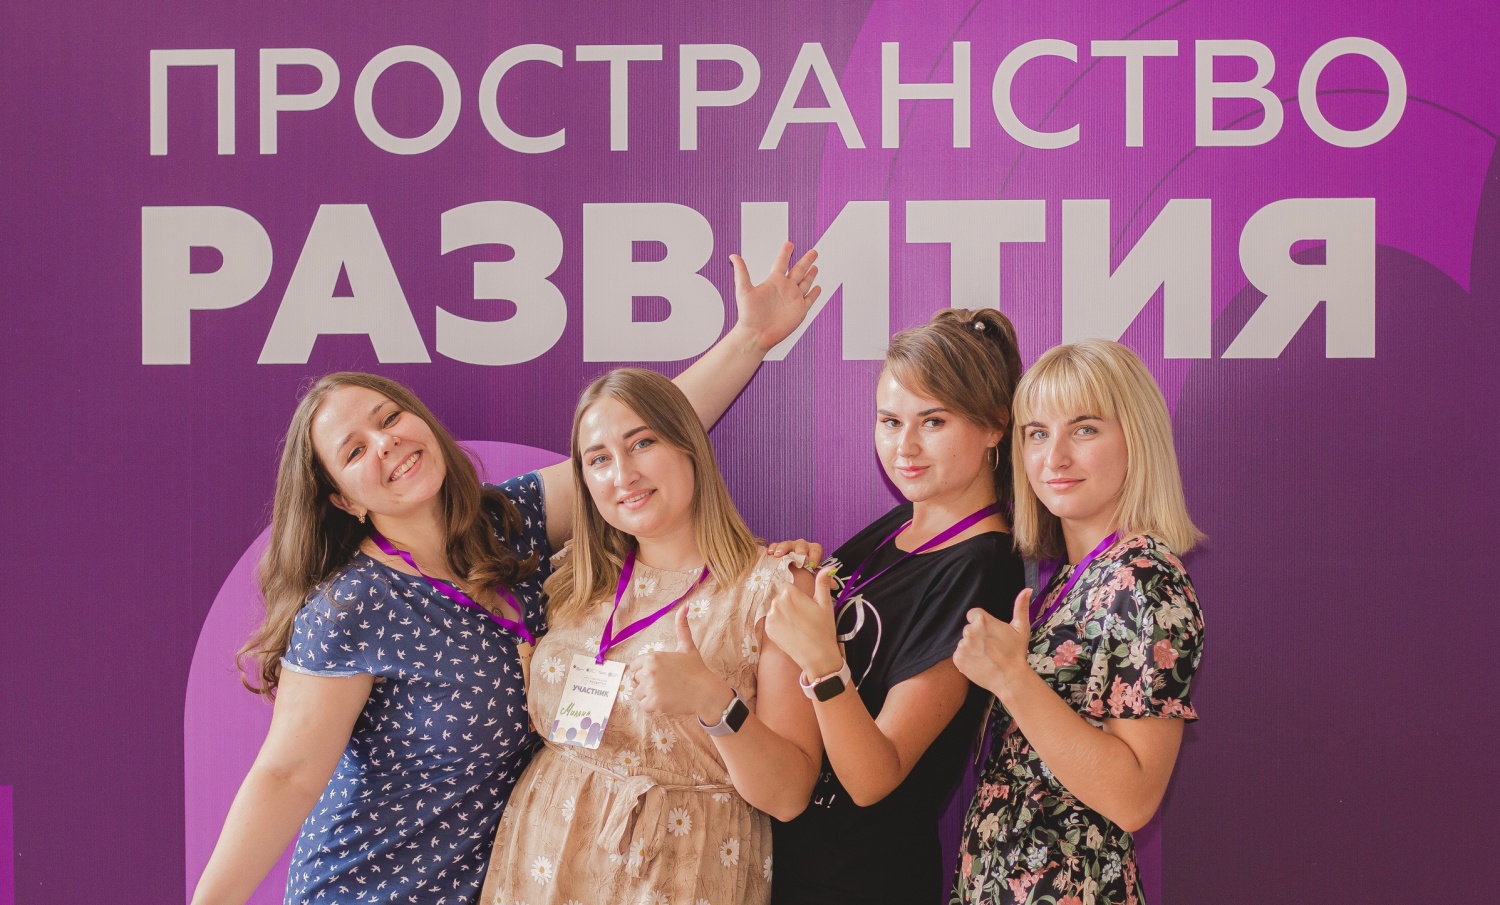 Программа «Пространство развития» стала площадкой для проведения Всероссийского конкурса молодежных проектов